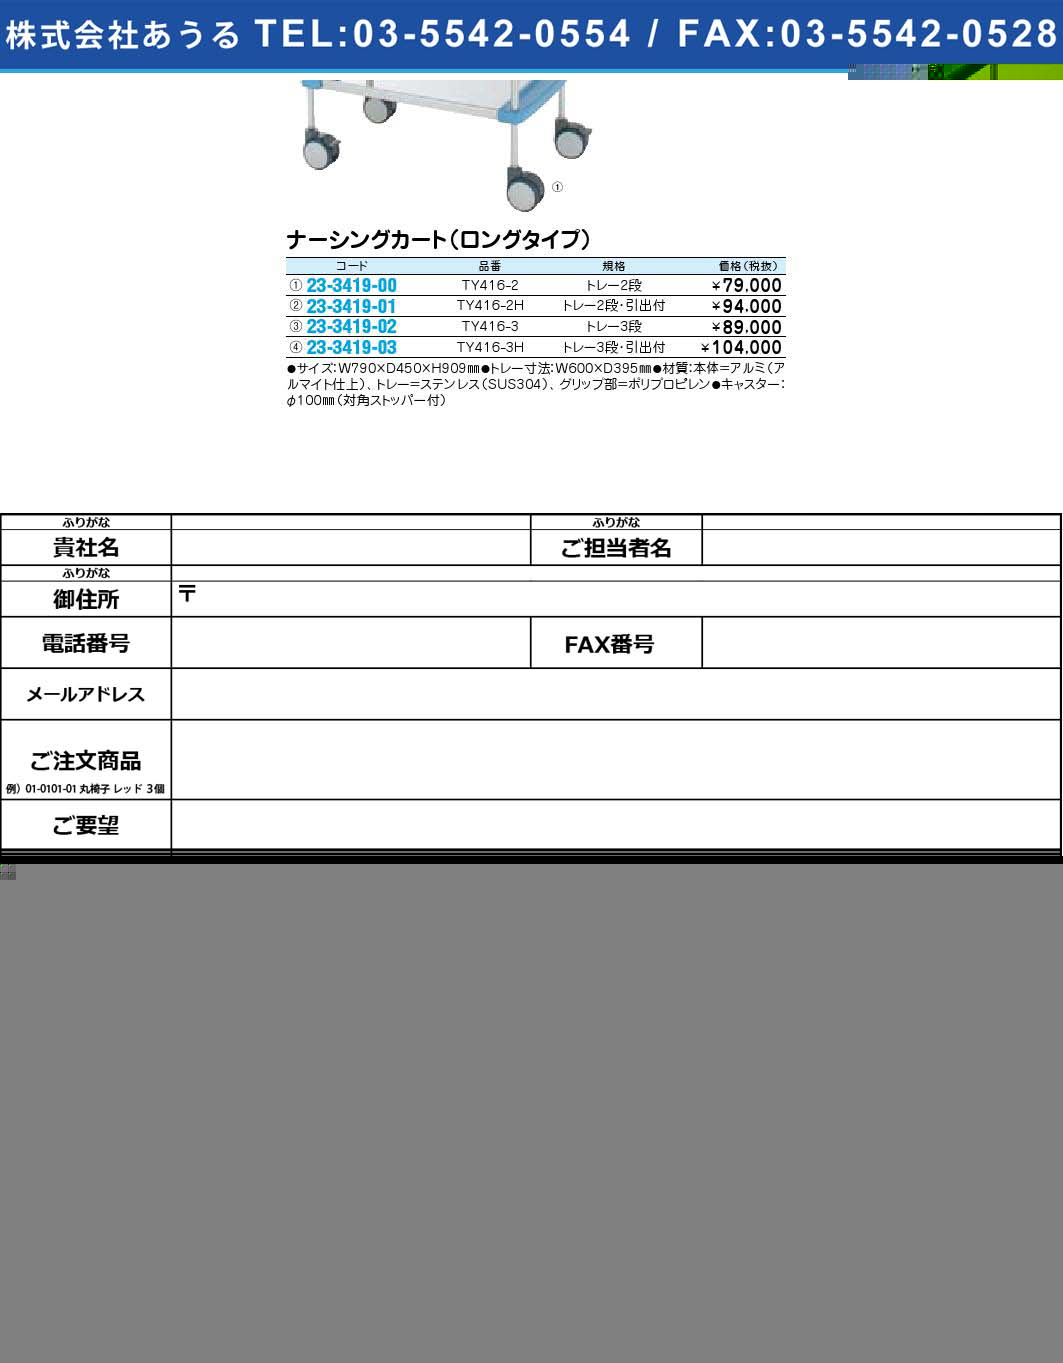 ナーシングカート（ロングタイプ）TY416-3H(23-3419-03)【1個単位】